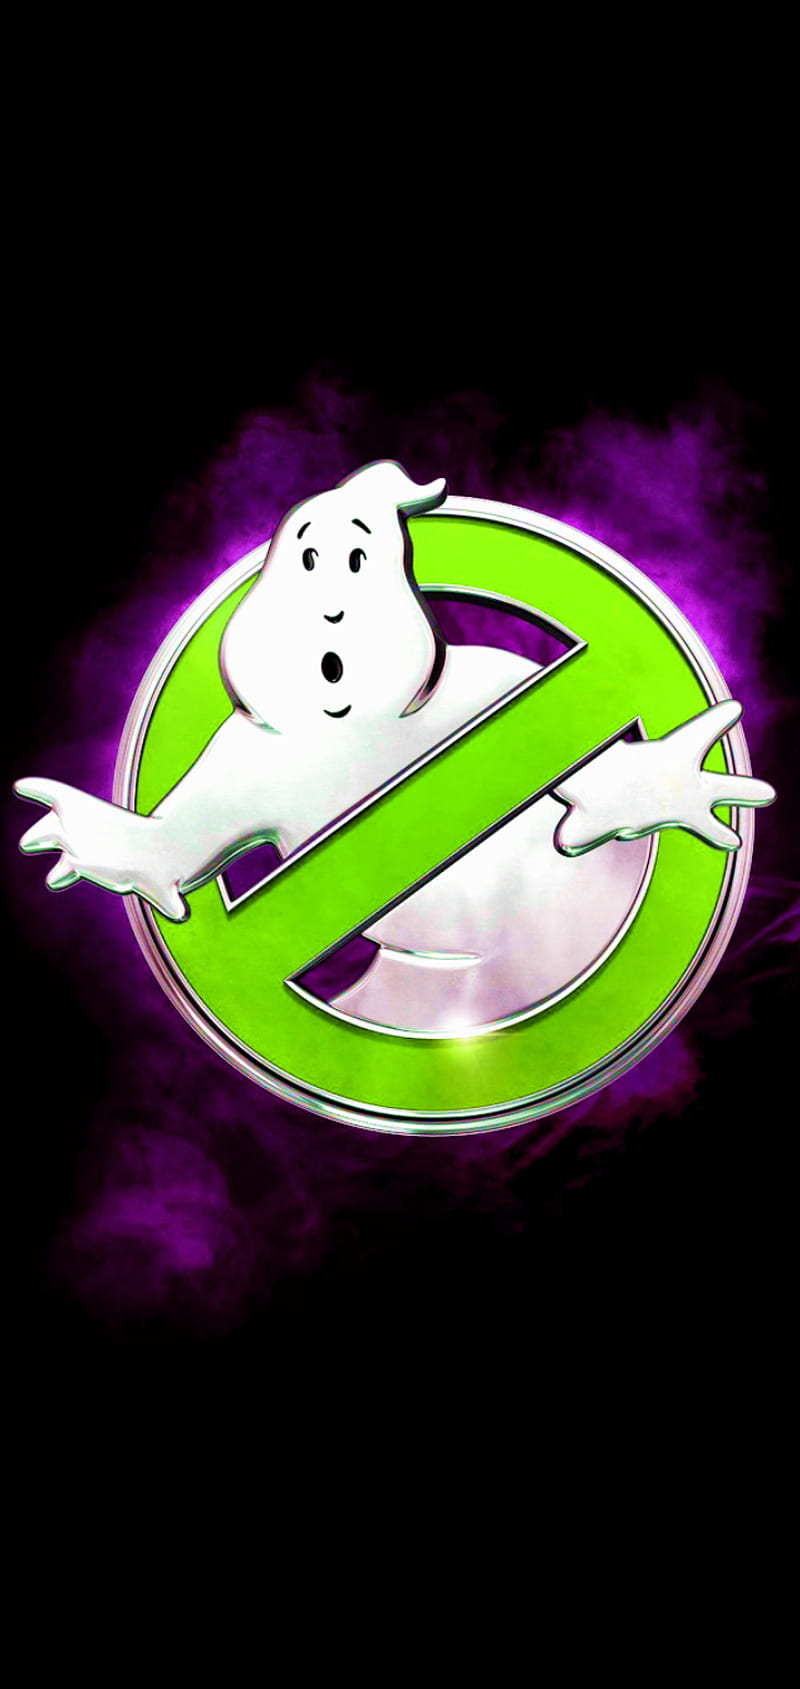 ghostbusters logo hd